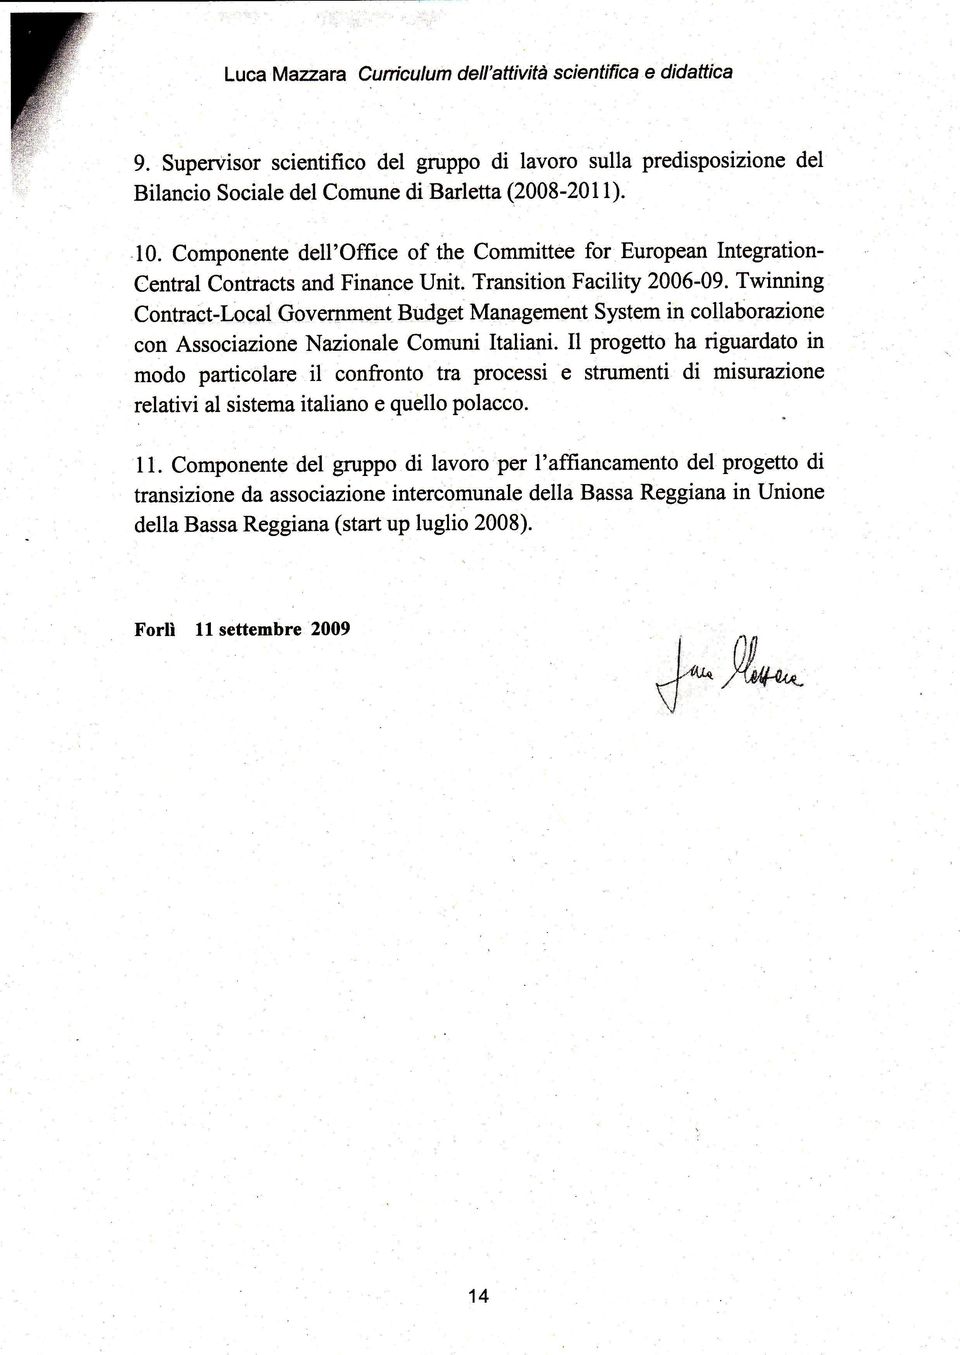 Twinning Contract-Local Government Budget Management System in collabo razione con Associazione Nazionale Comuni ltaliani.